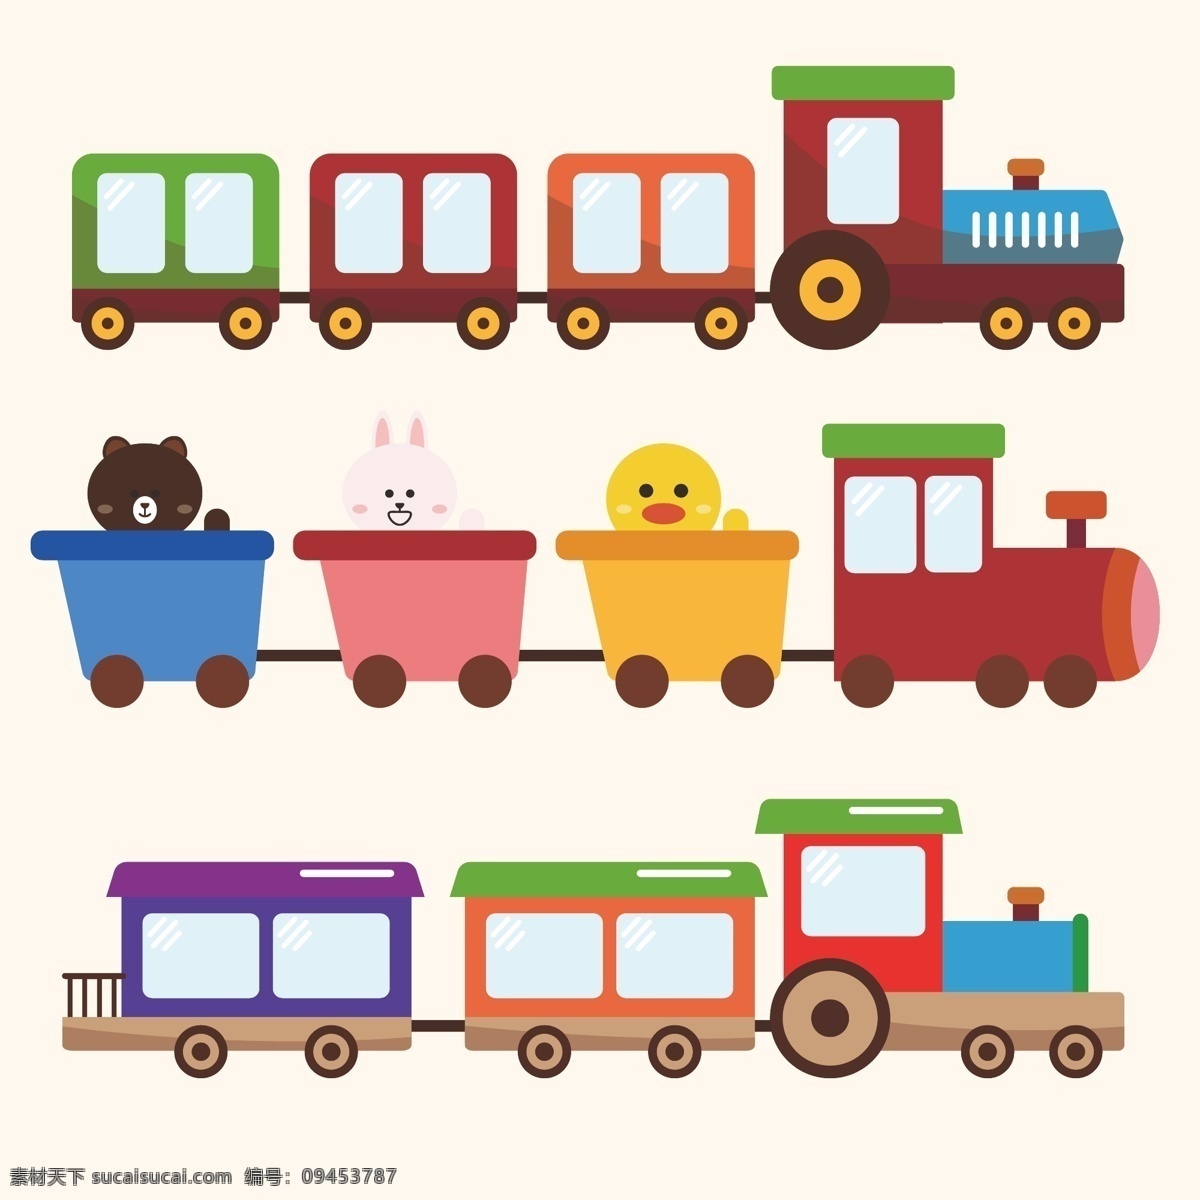 卡通小火车 卡通火车 卡通元素 火车 卡通熊 卡通兔子 儿童 元素 卡通设计